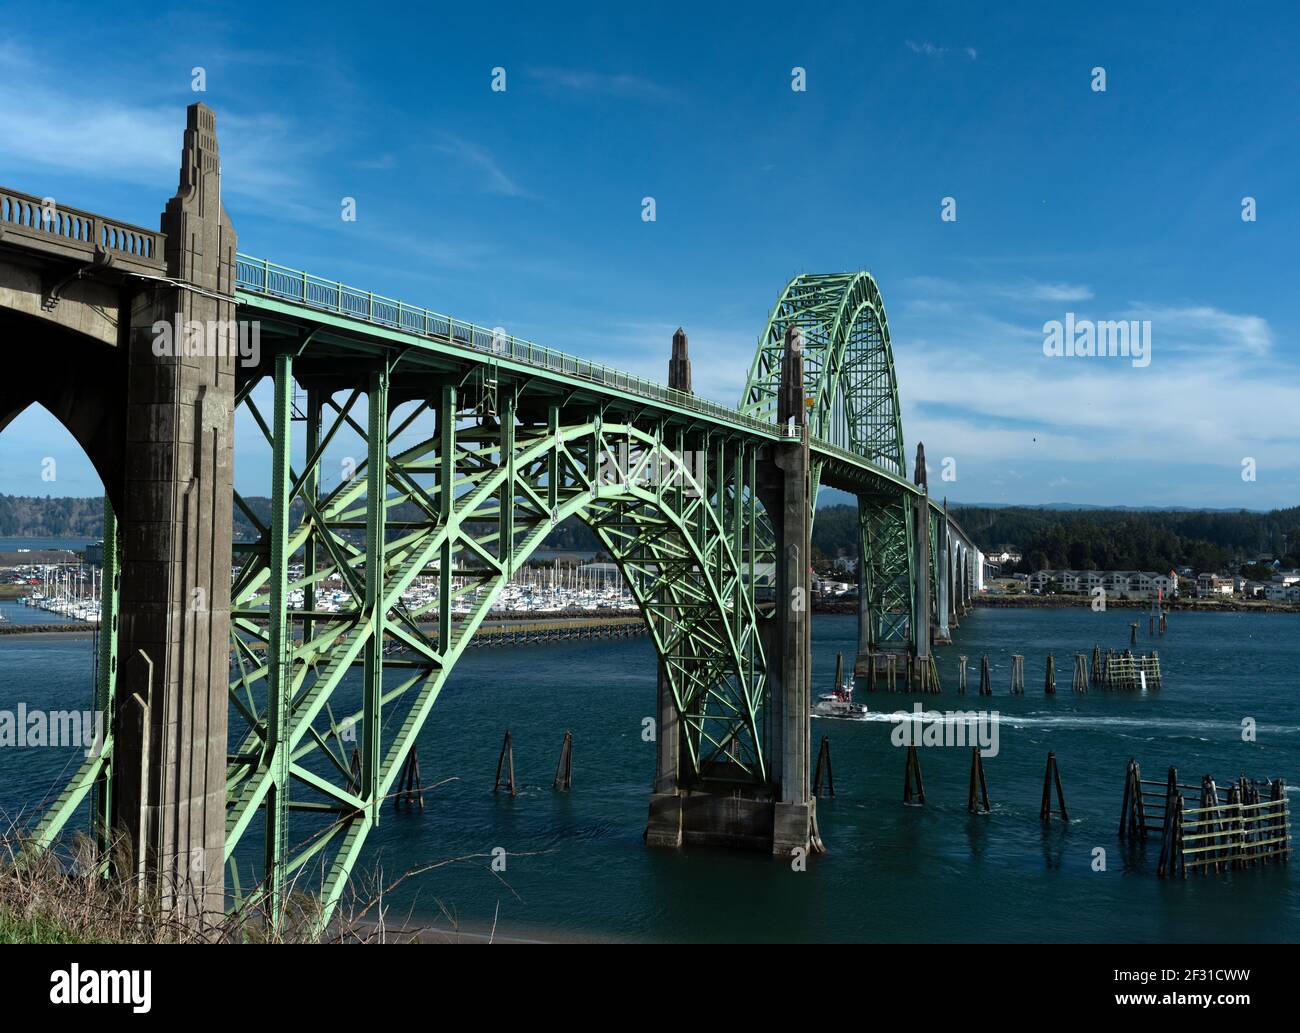 Dies ist die Yaquina Bay Bridge in Newport, Oregon, die an der Küste von Oregon liegt. Das Bild wurde im März aufgenommen. Eine Marina ist im Hintergrund. Stockfoto